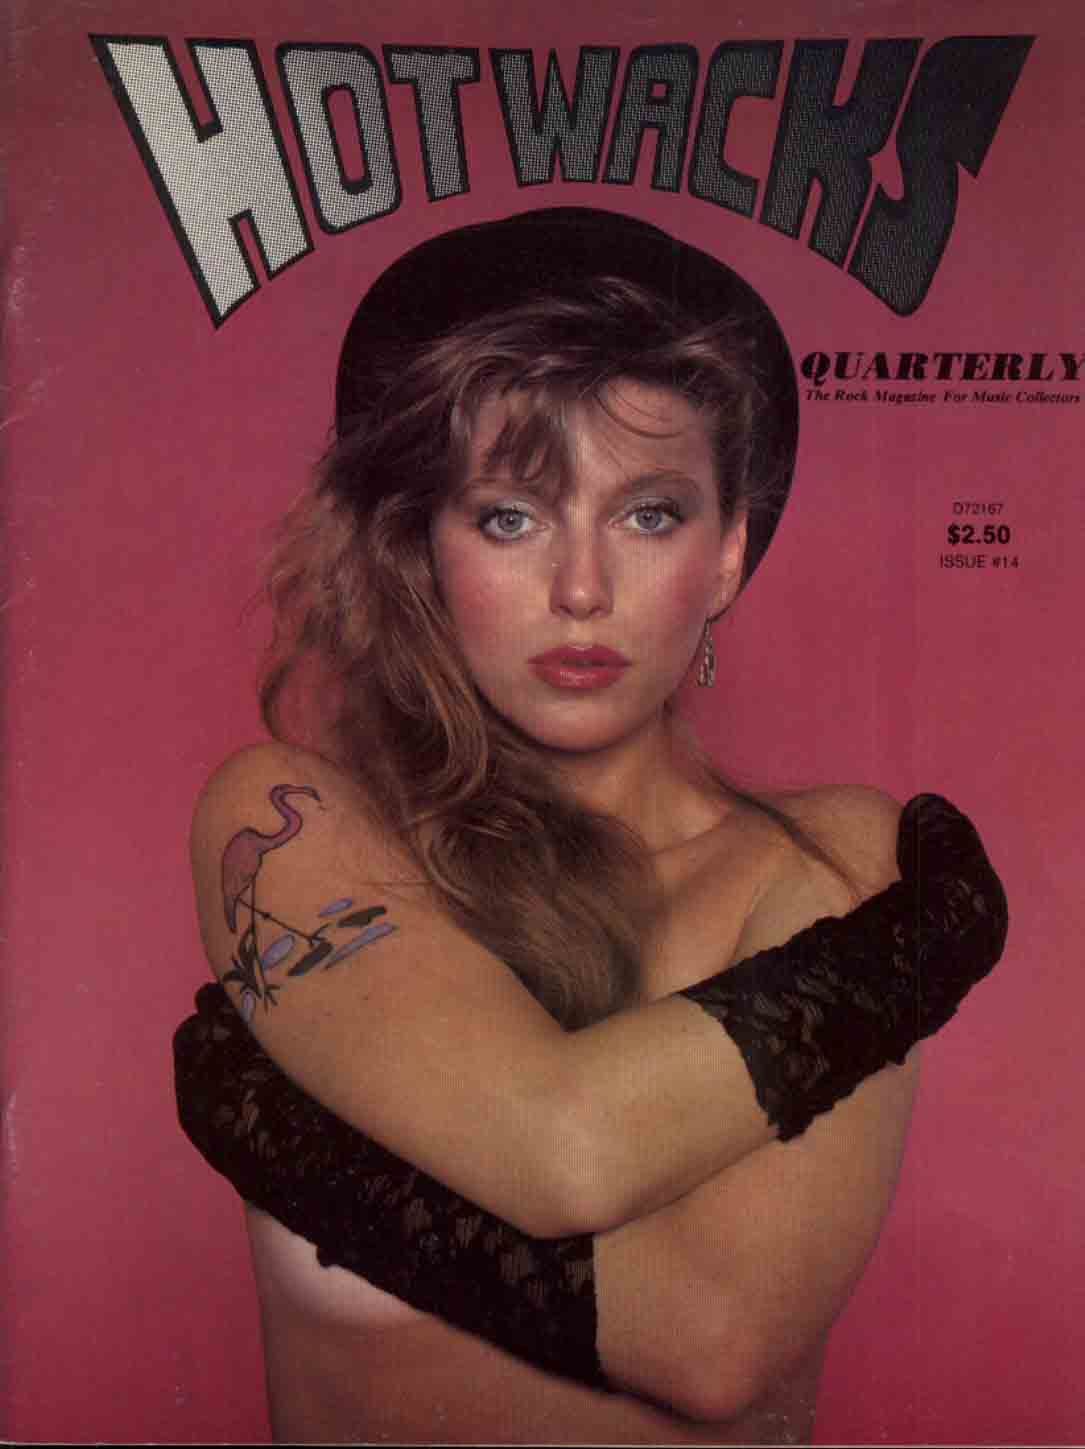 https://i.postimg.cc/fs1Vj6Cm/Hot-Wacks-Quarterly-14-1983-Bebe-Buell-cover.jpg